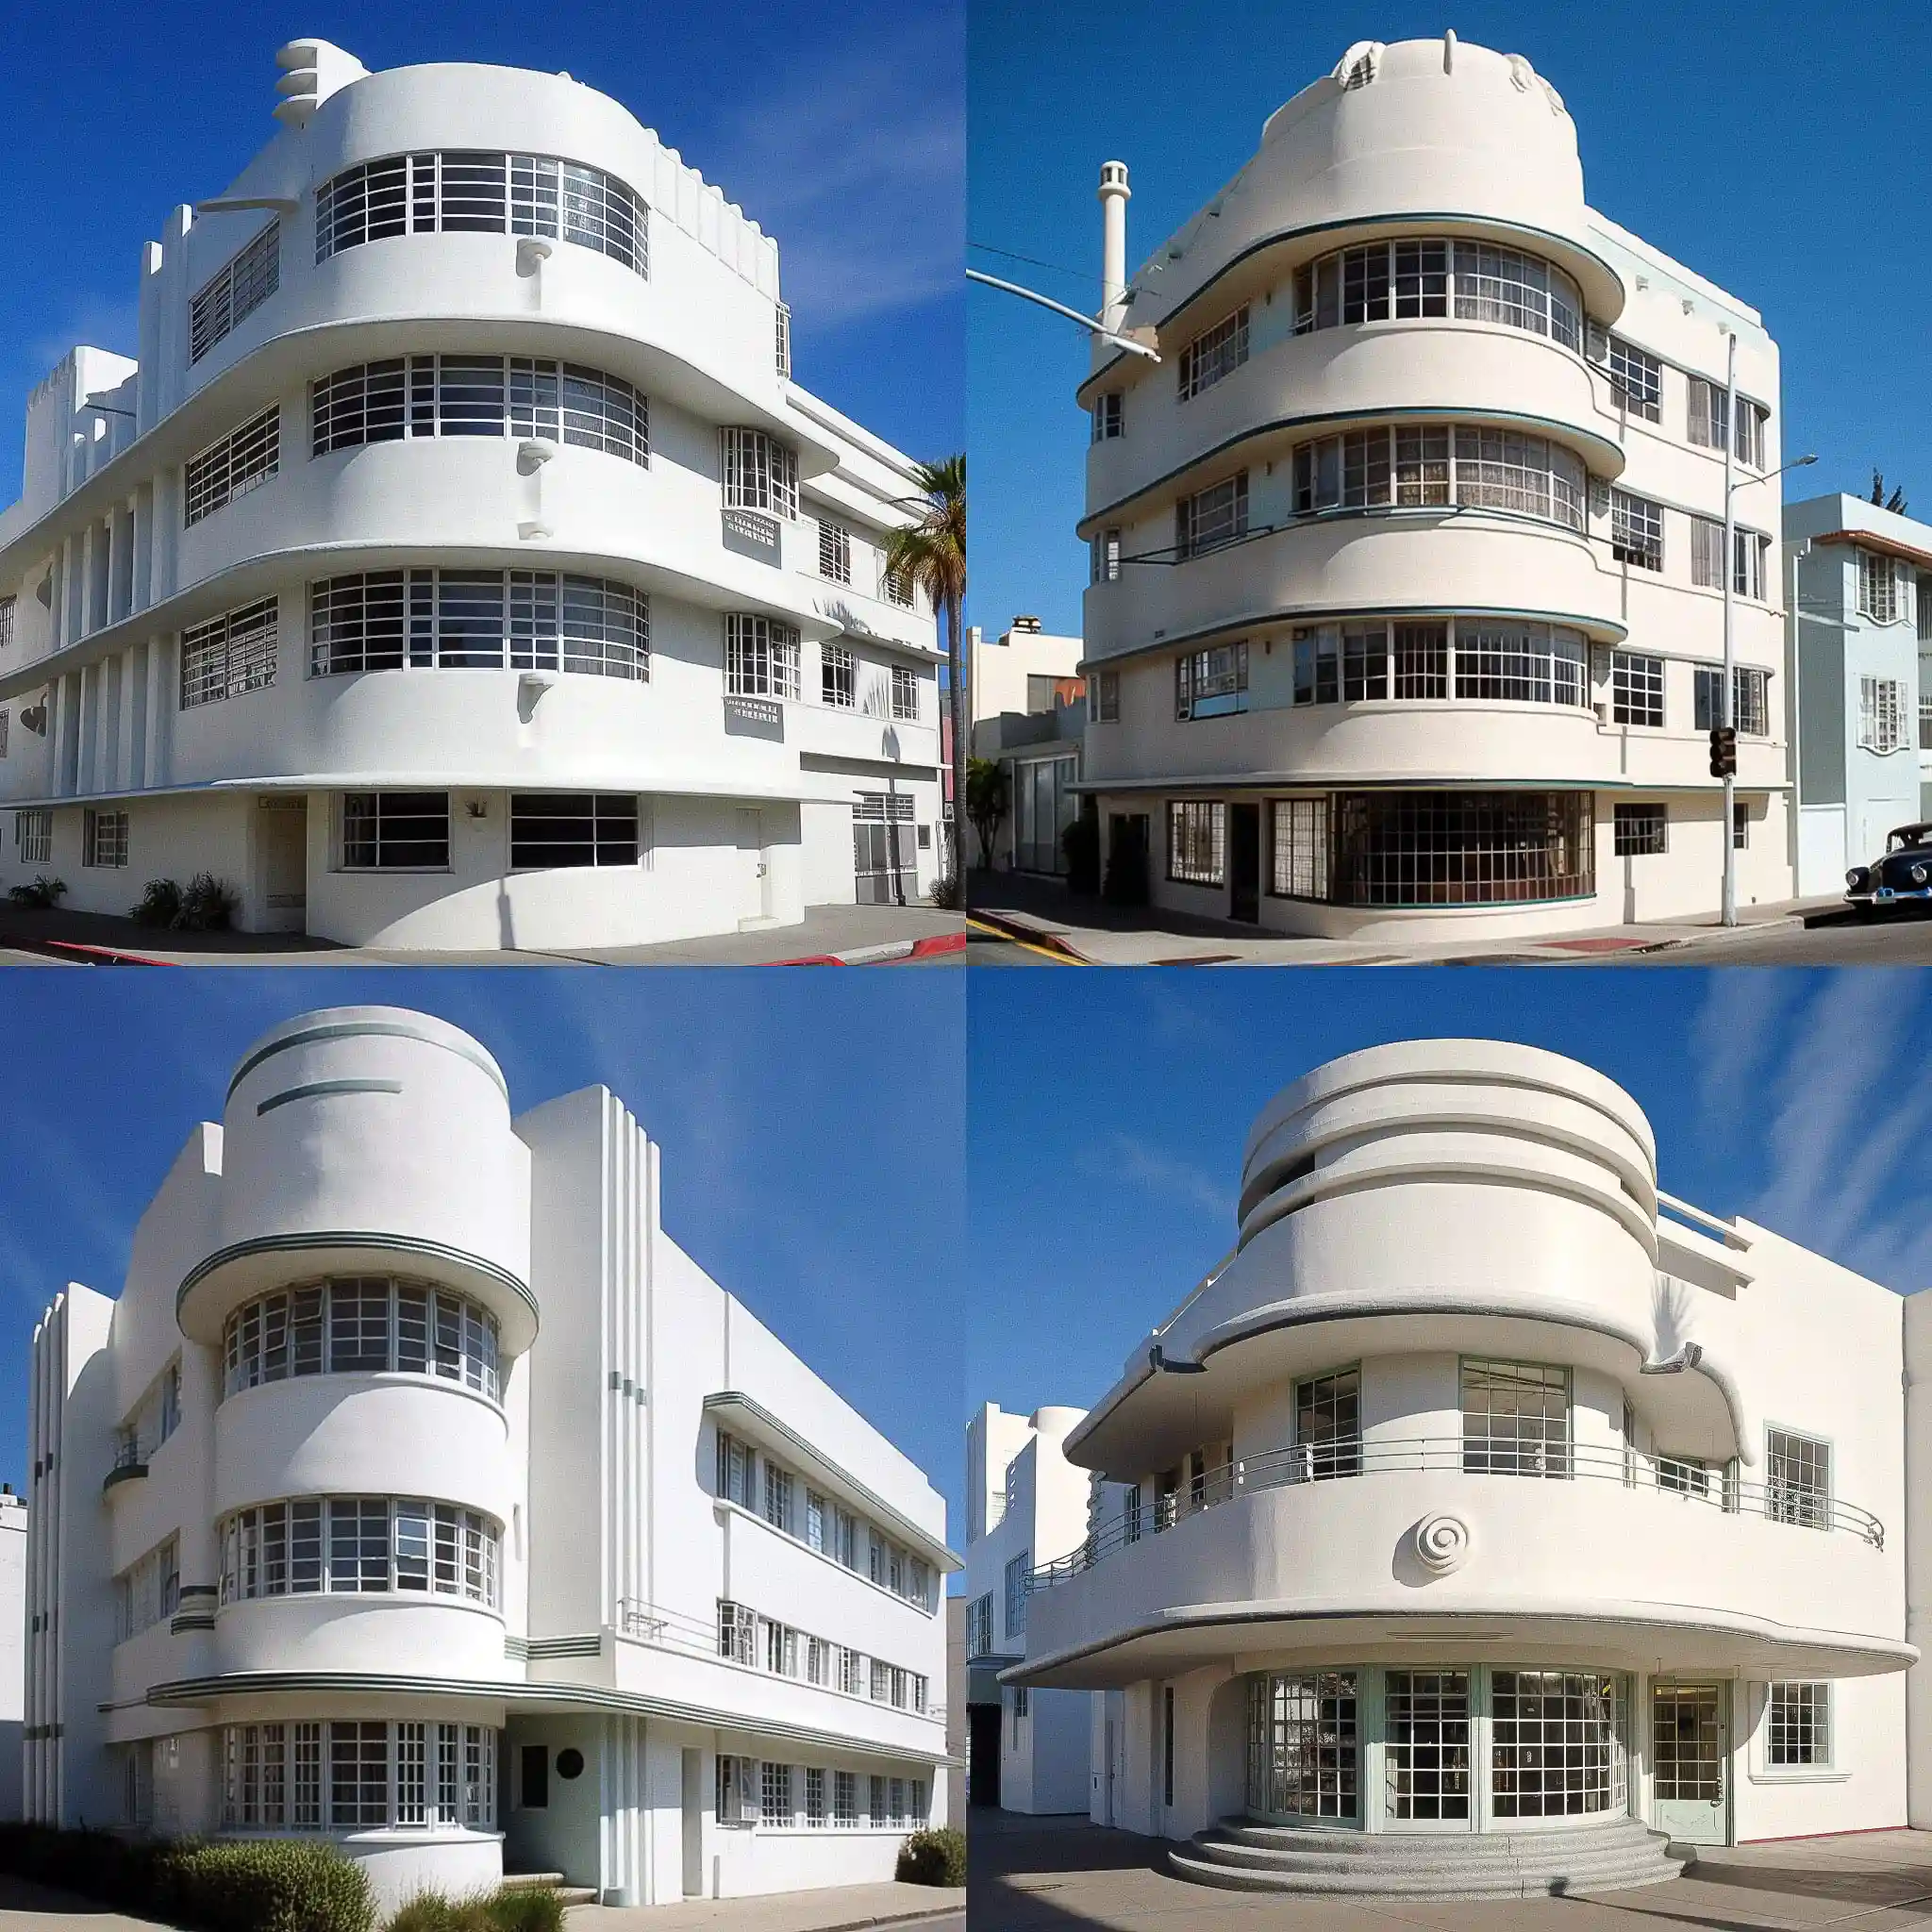 -流线型现代主义建筑 streamline moderne architecture风格midjourney AI绘画作品